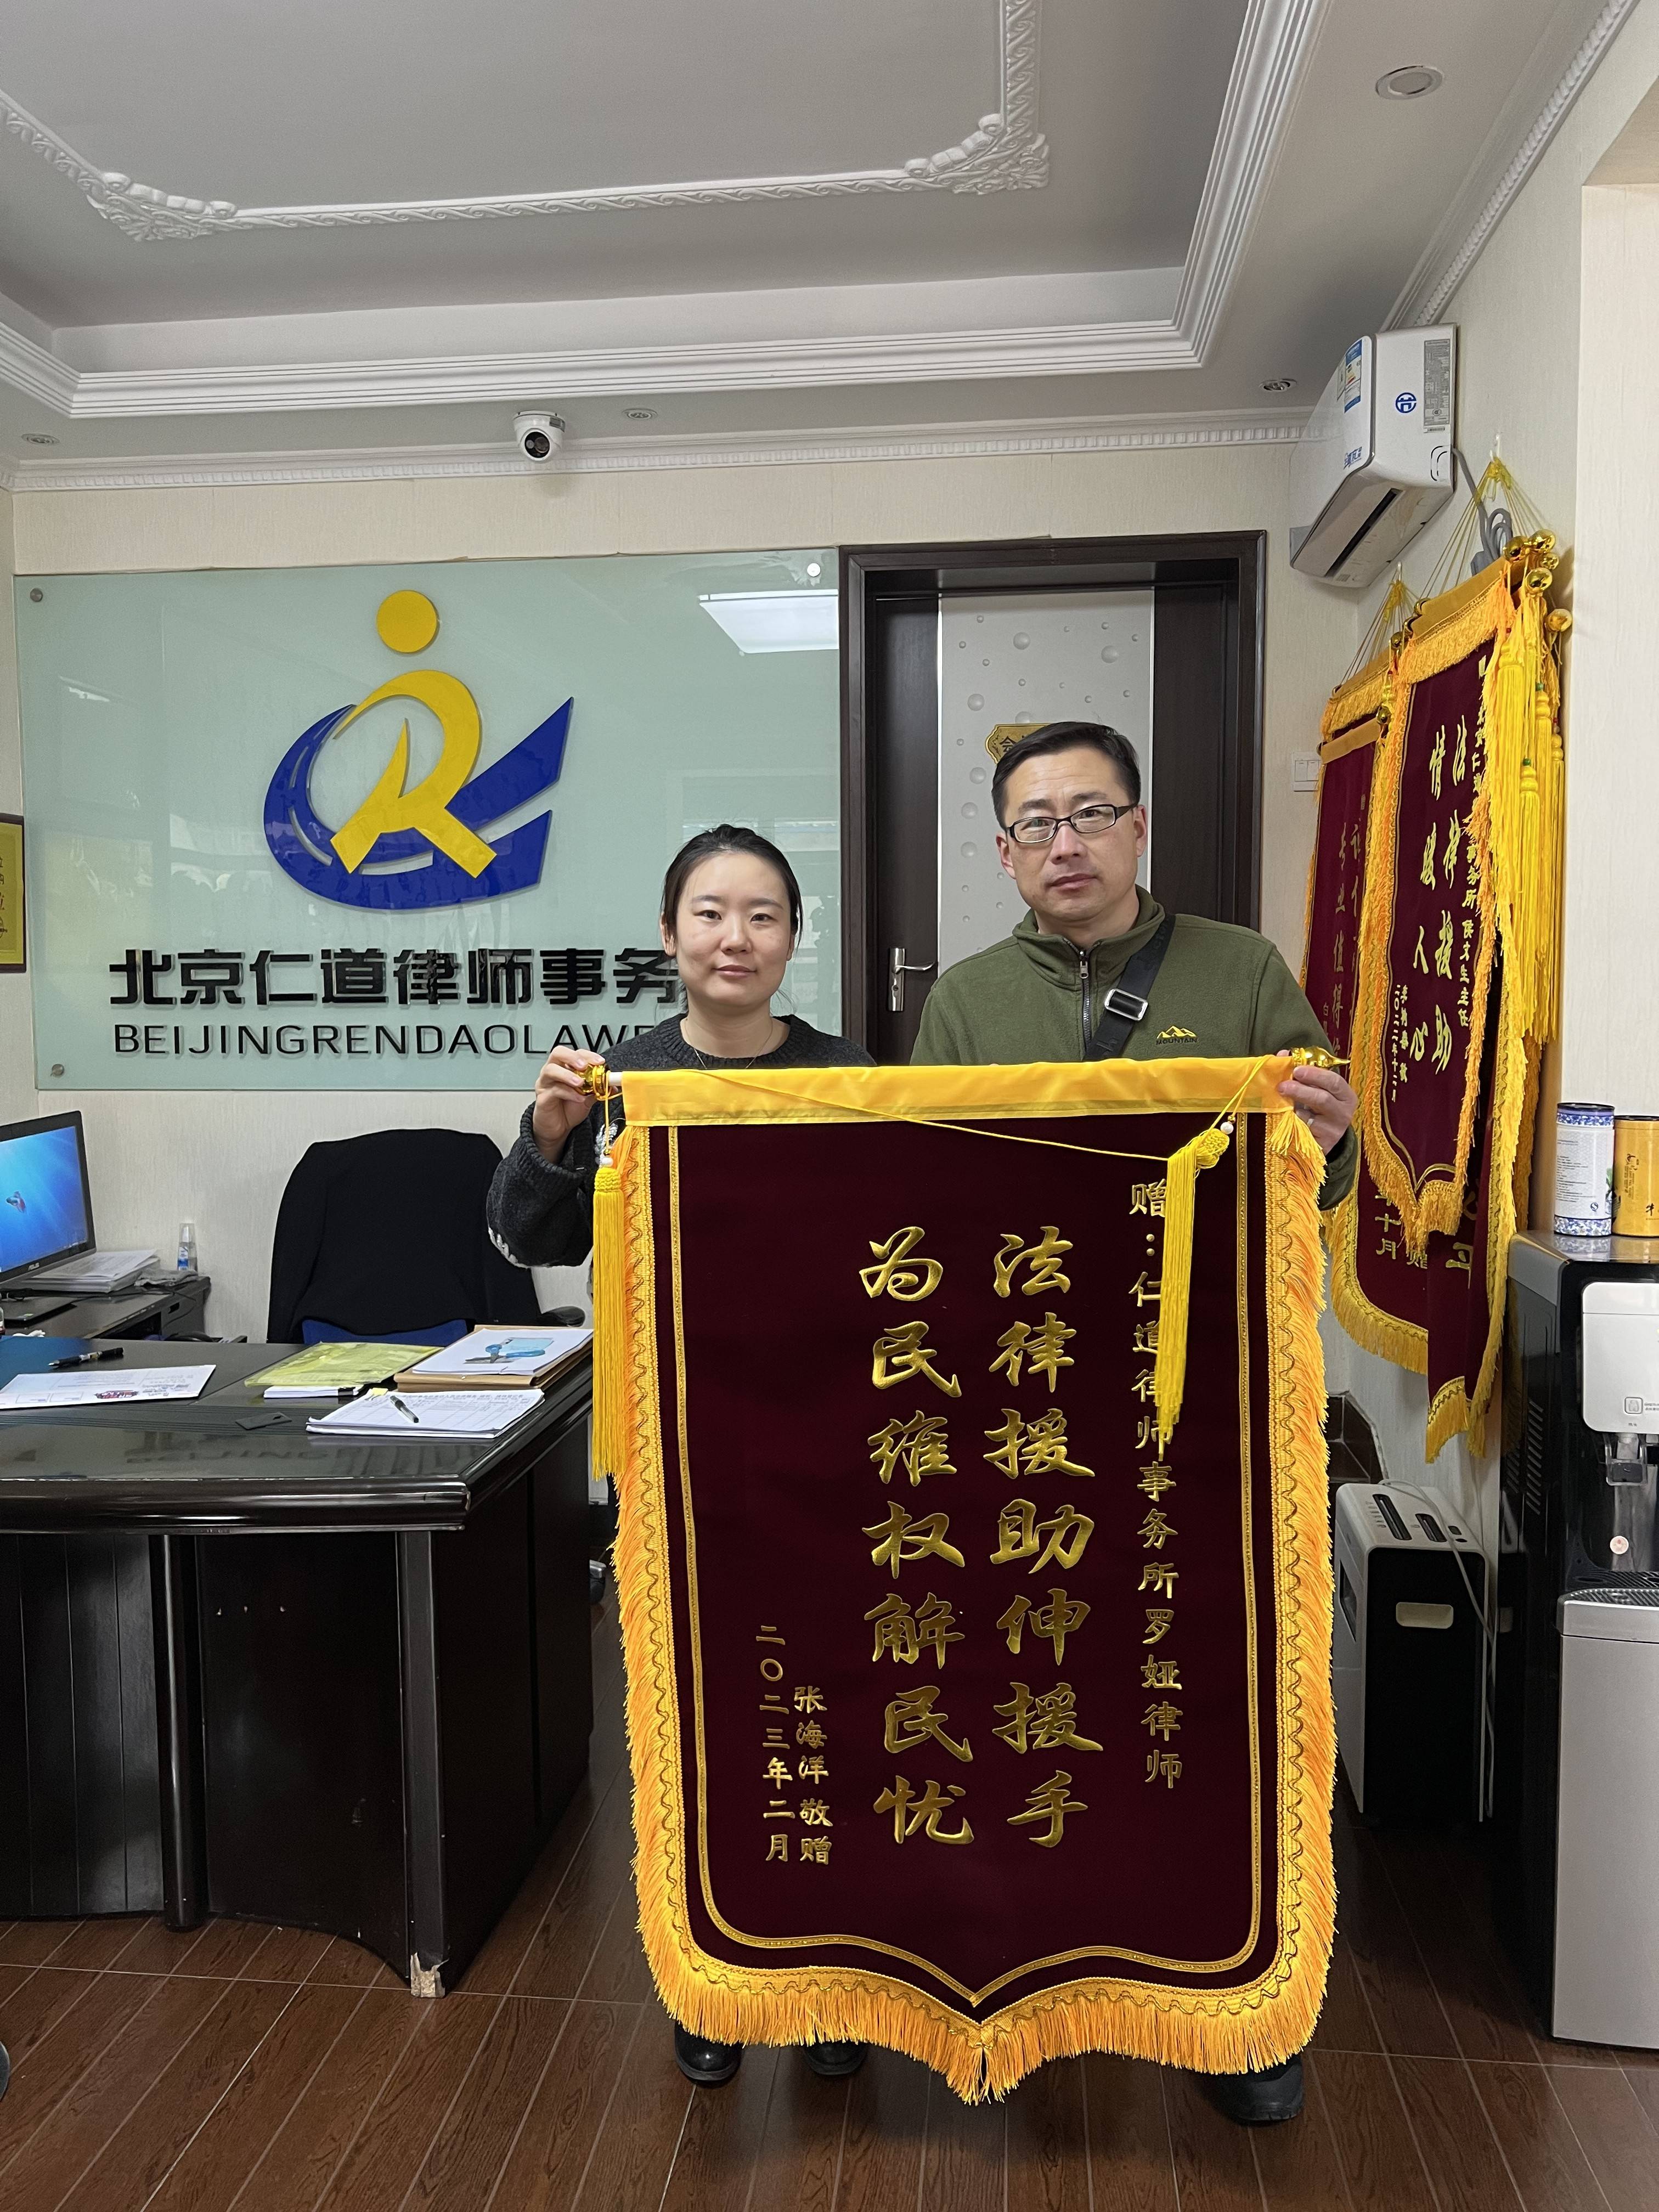 张海洋敬赠北京仁道律师事务所罗娅律师锦旗